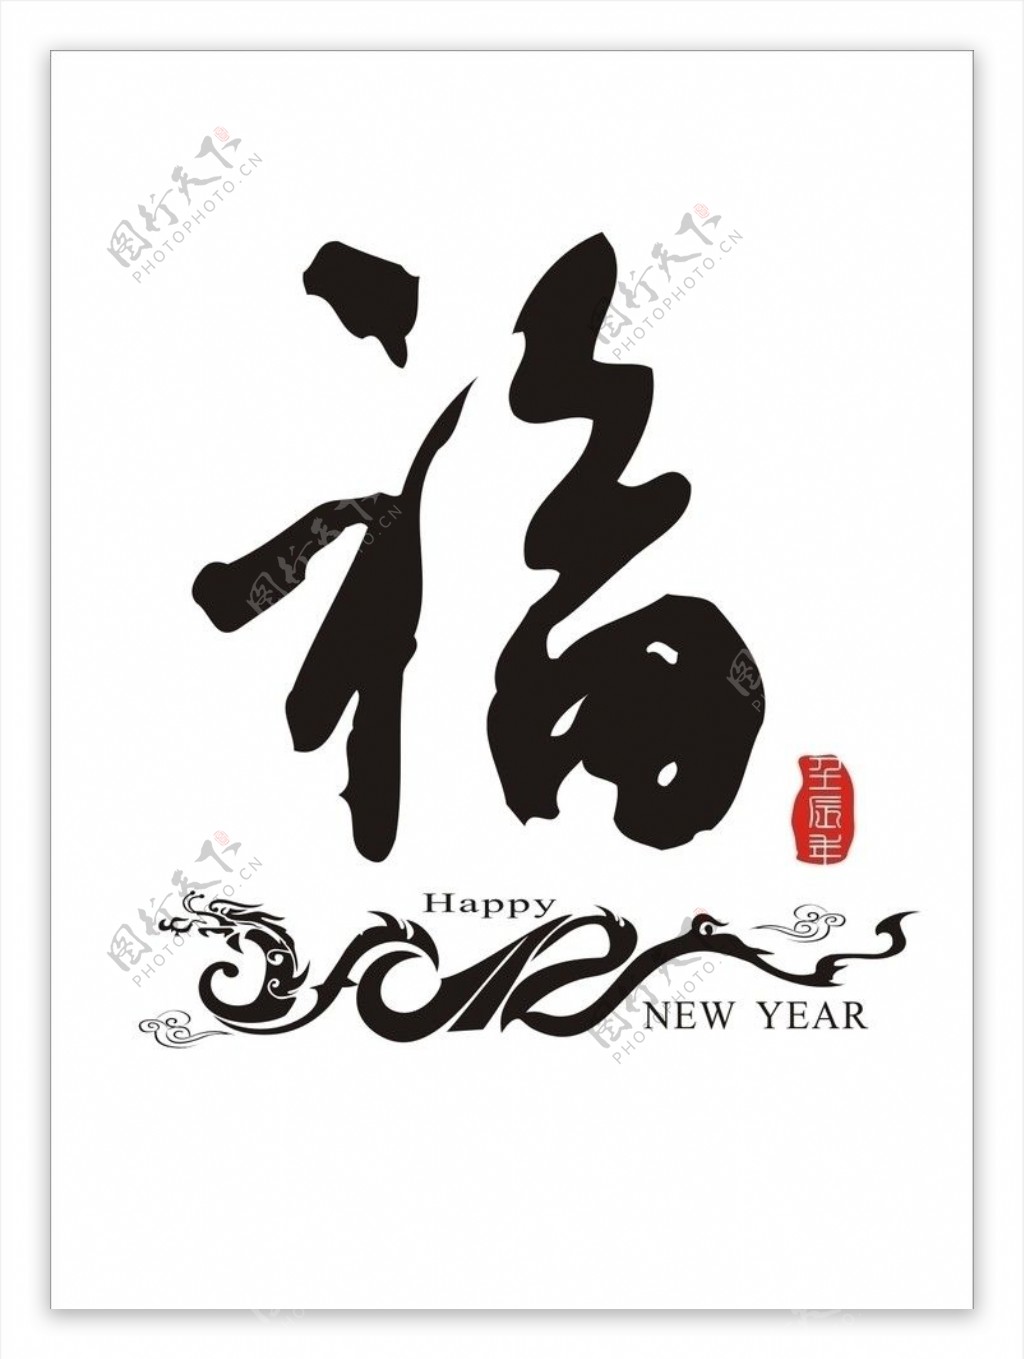 2012龙字造型福字矢量图片